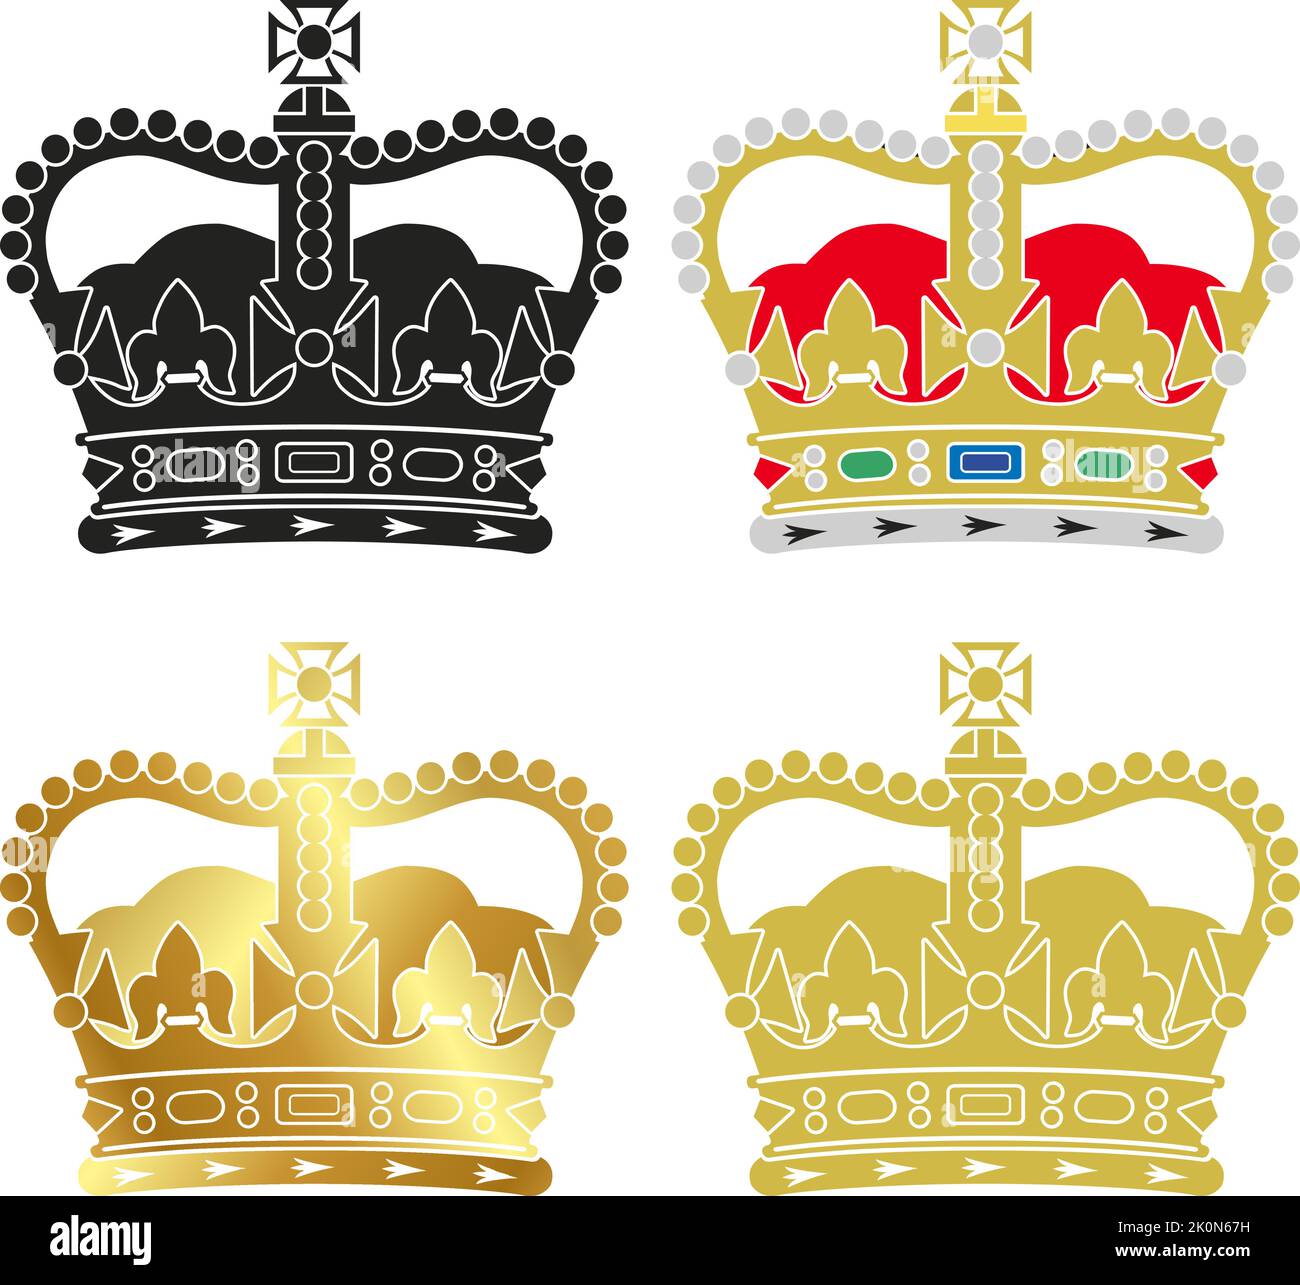 St. Edward's Crown, britisches Königliches Symbol, Vereinigtes Königreich, Vektorgrafik Stock Vektor